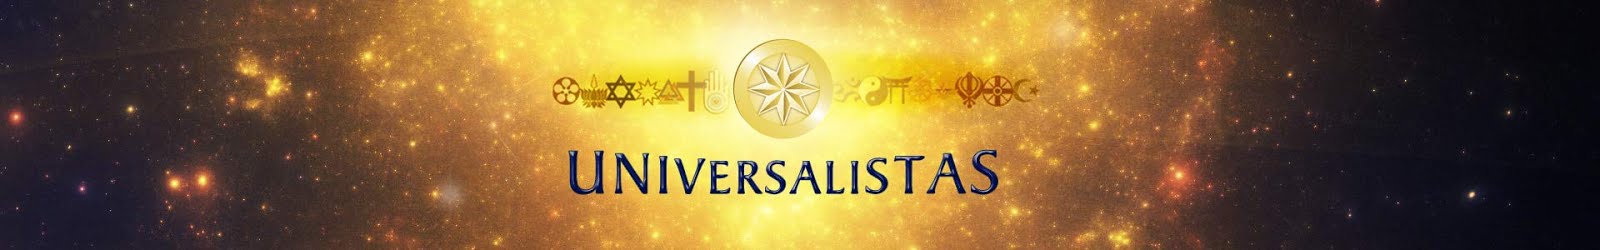 Blog dos Universalistas | Religião é um meio, e não um fim!